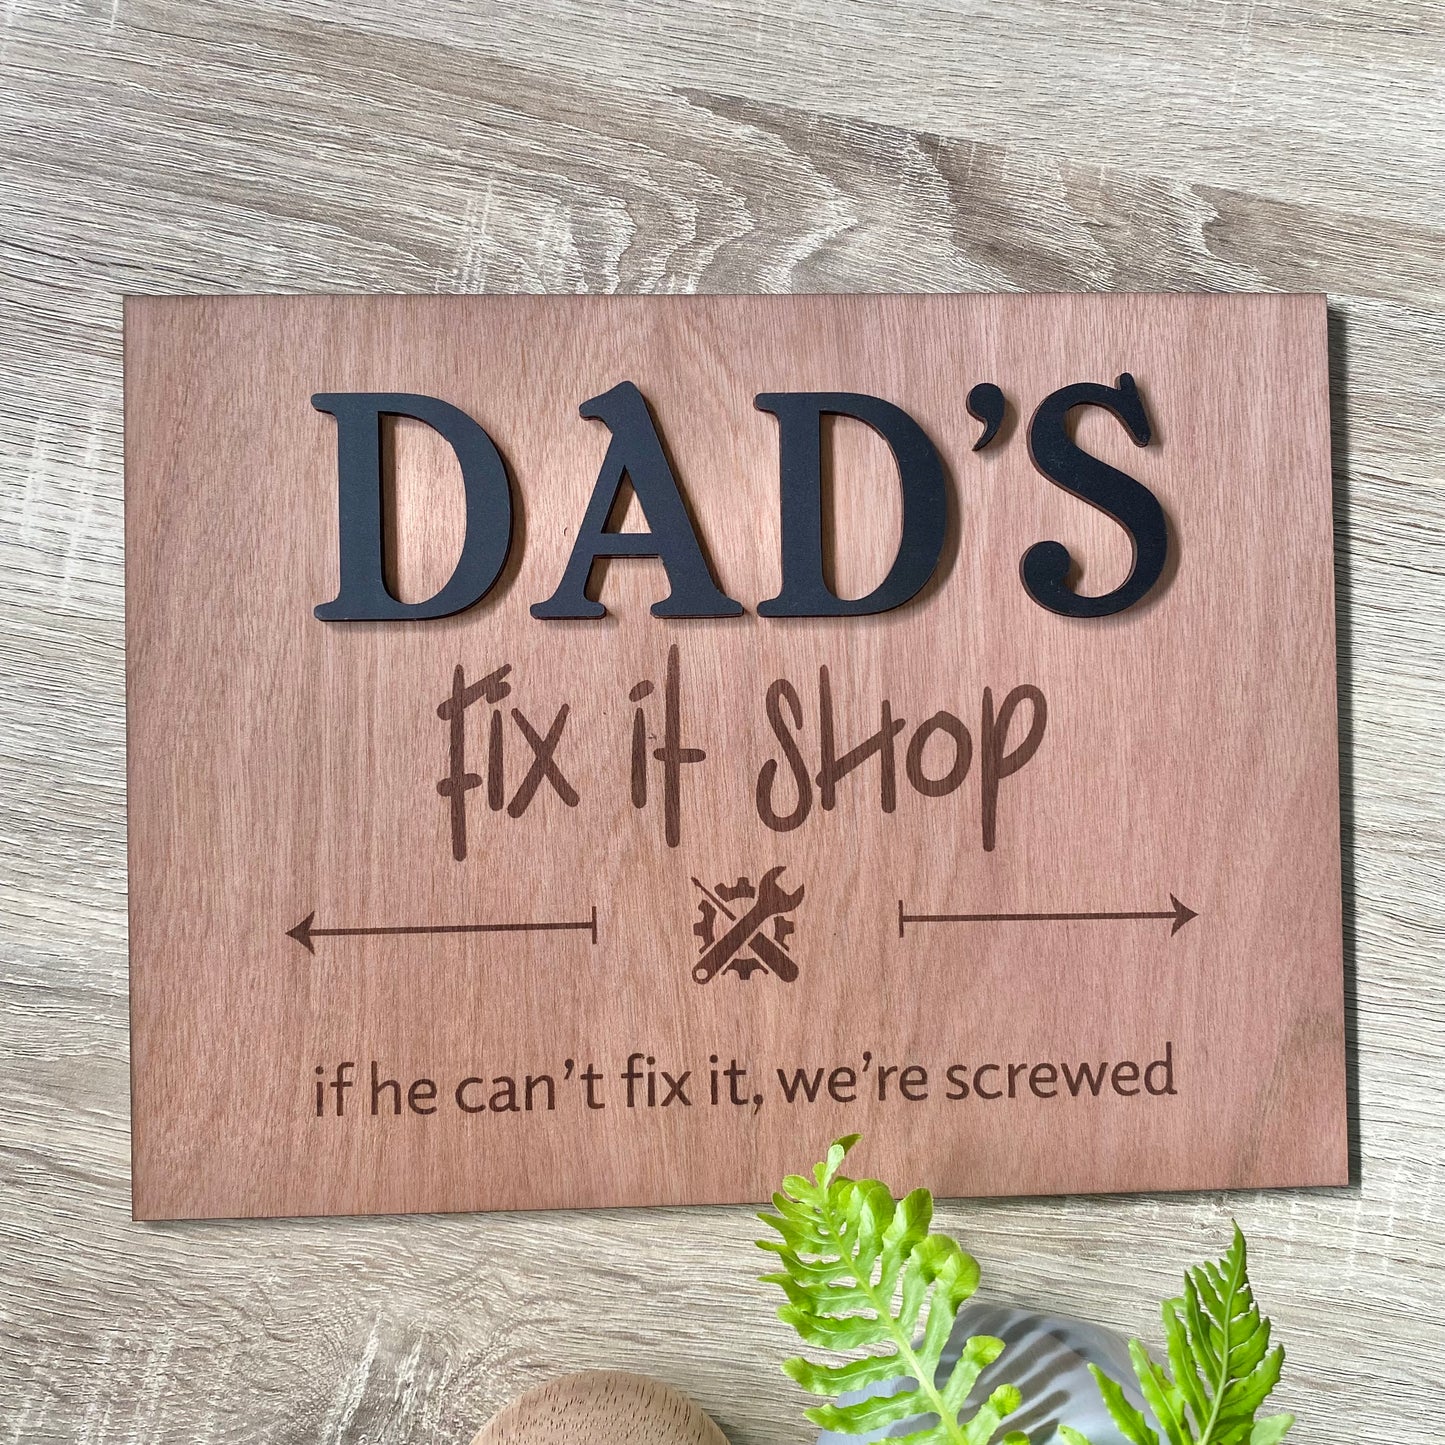 Fix it shop sign